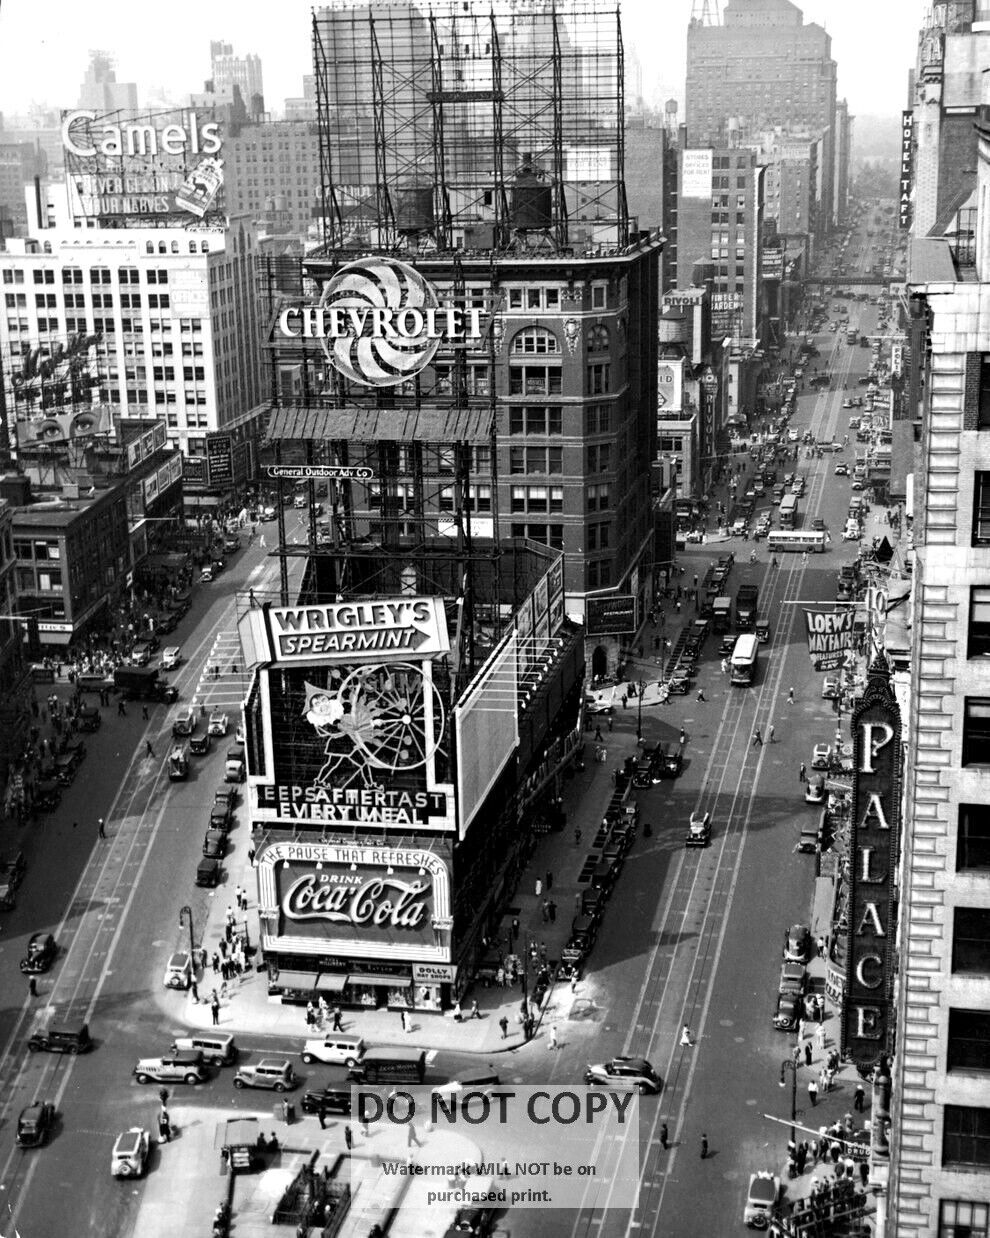 TIMES SQUARE IN NEW YORK CITY, CIRCA 1935 - 8X10 PHOTO (DA-456)